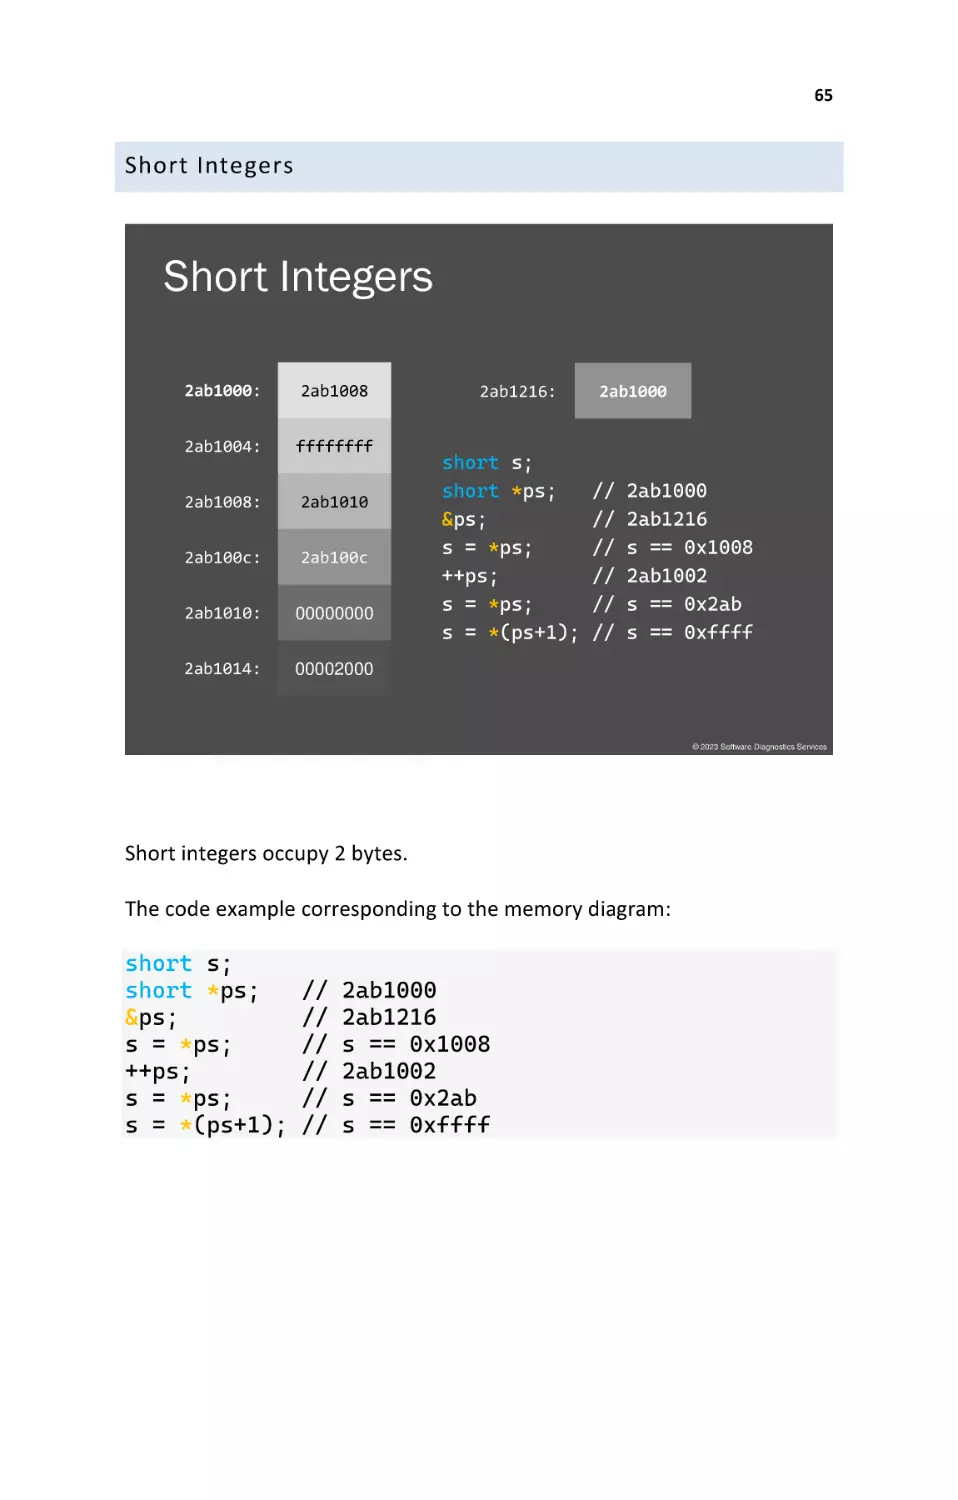 Short Integers